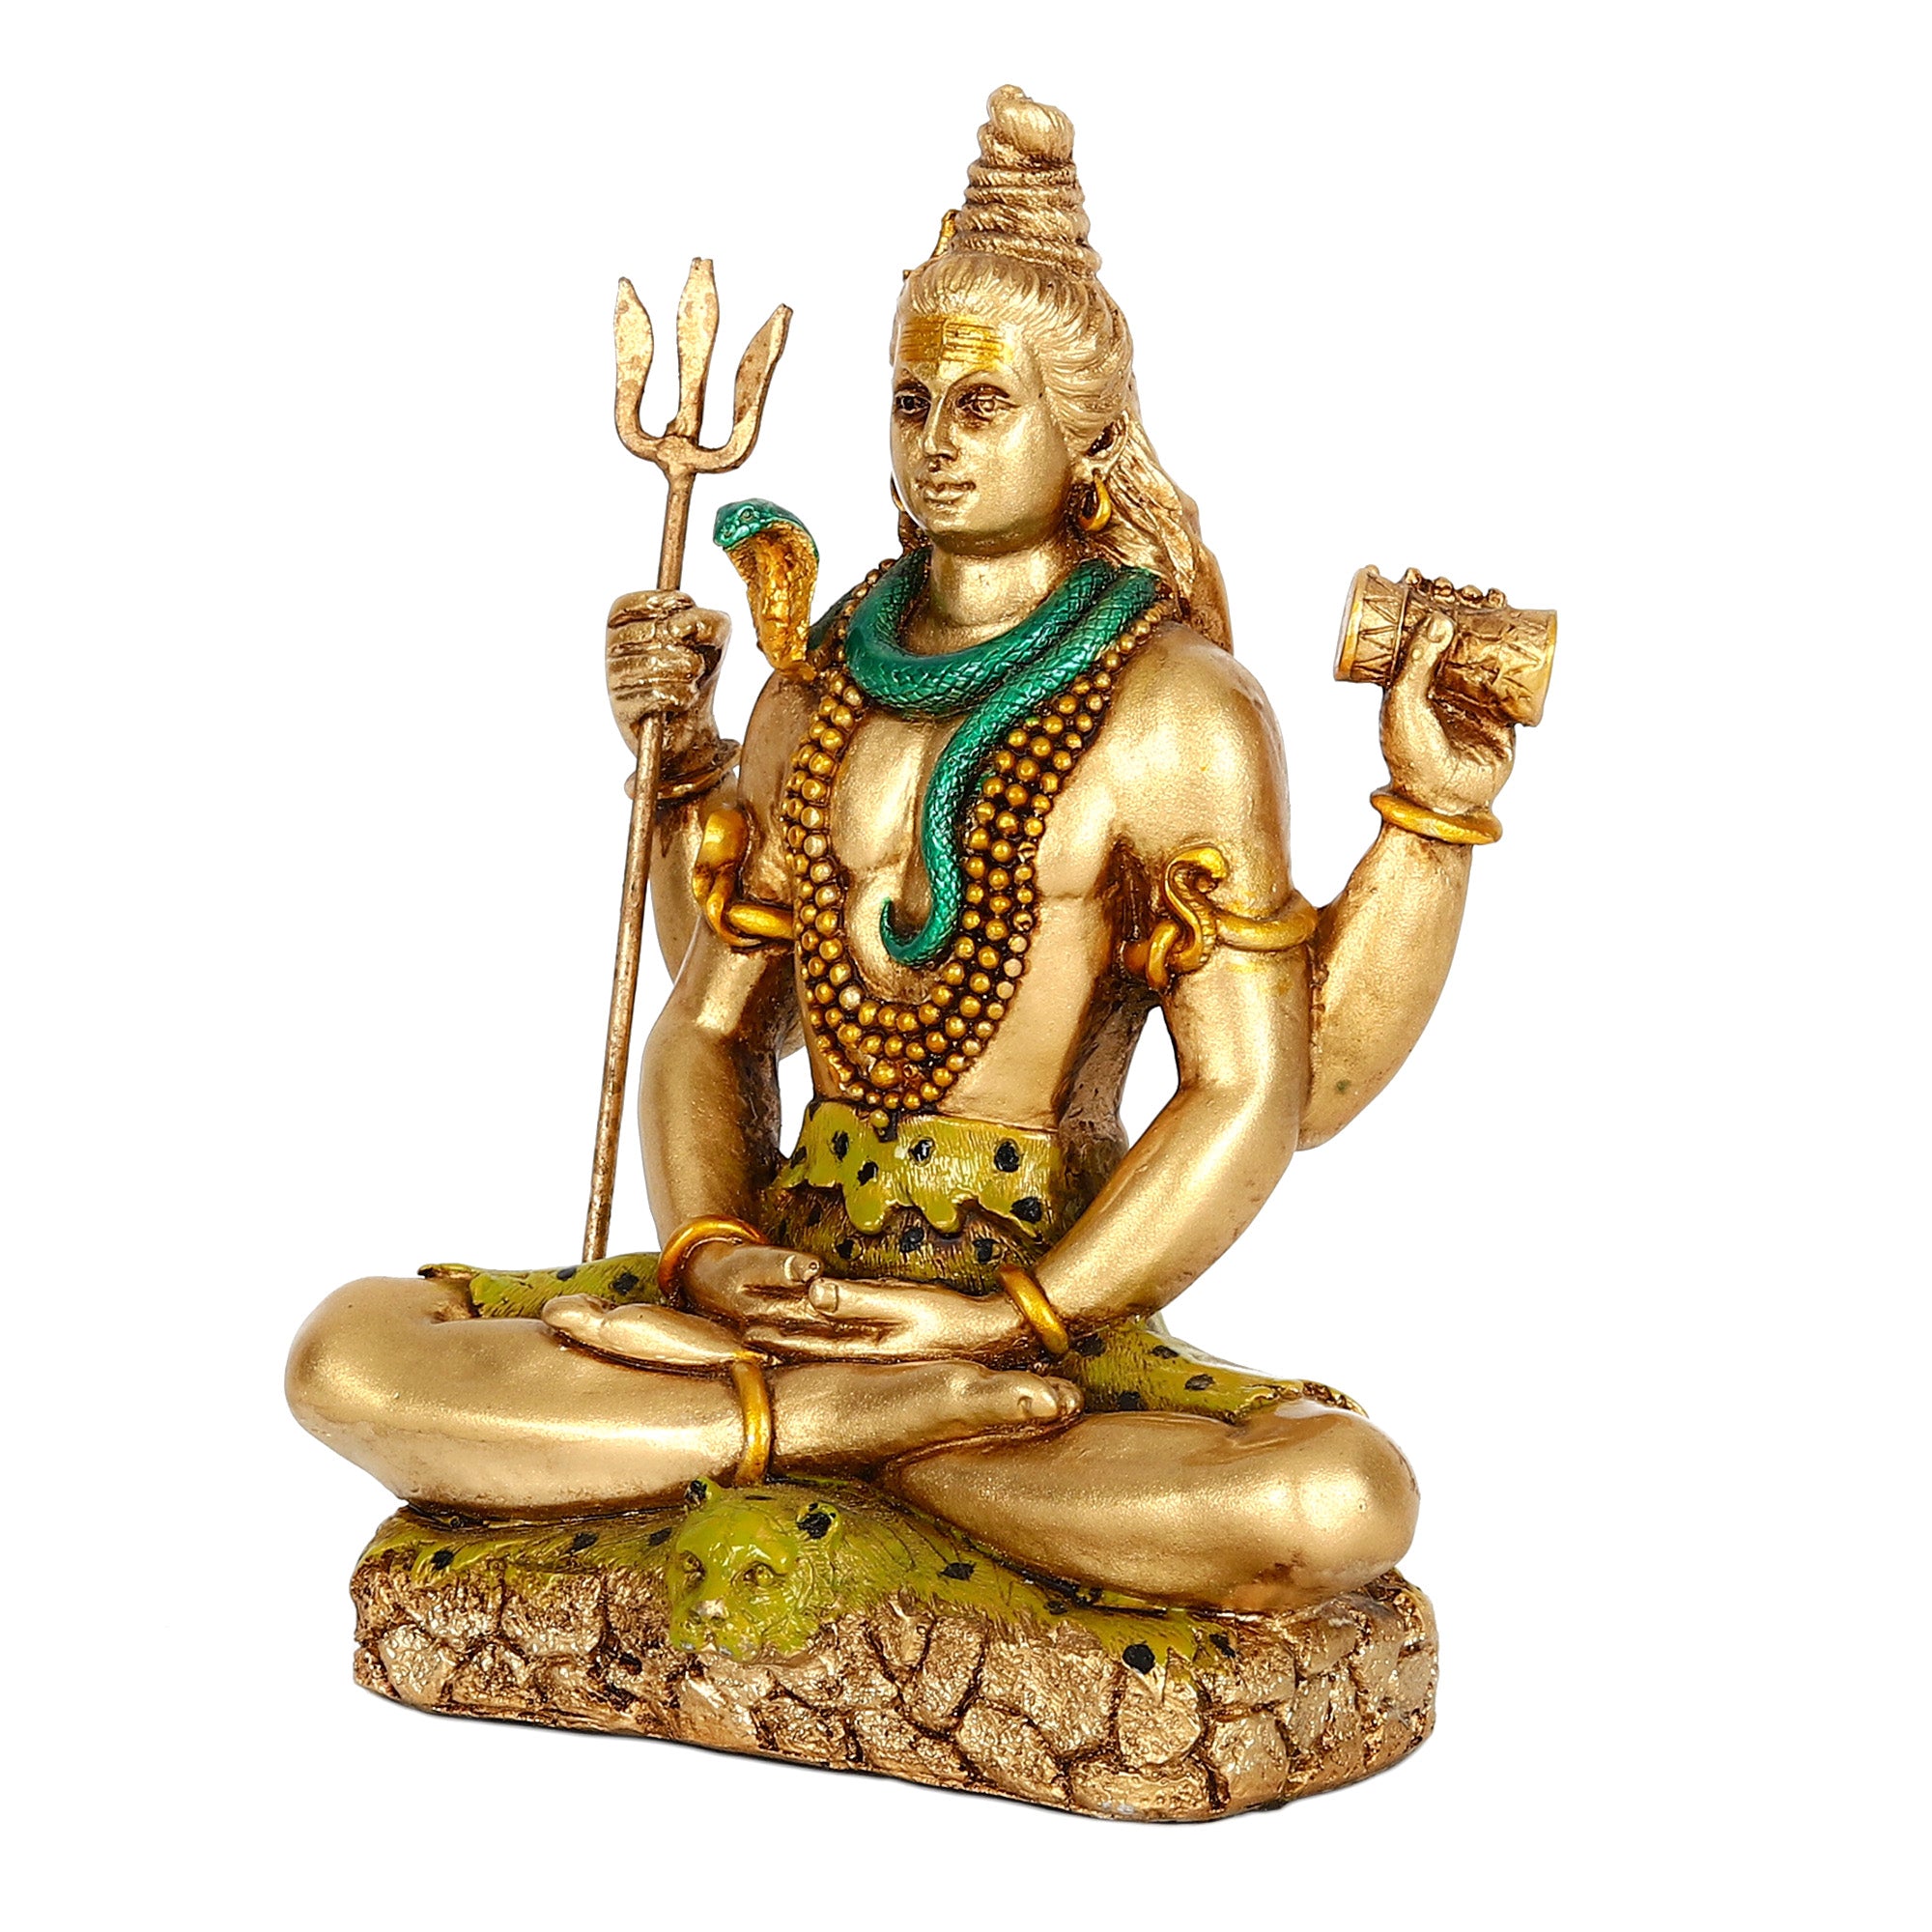 Meditating Lord Shiva Murti